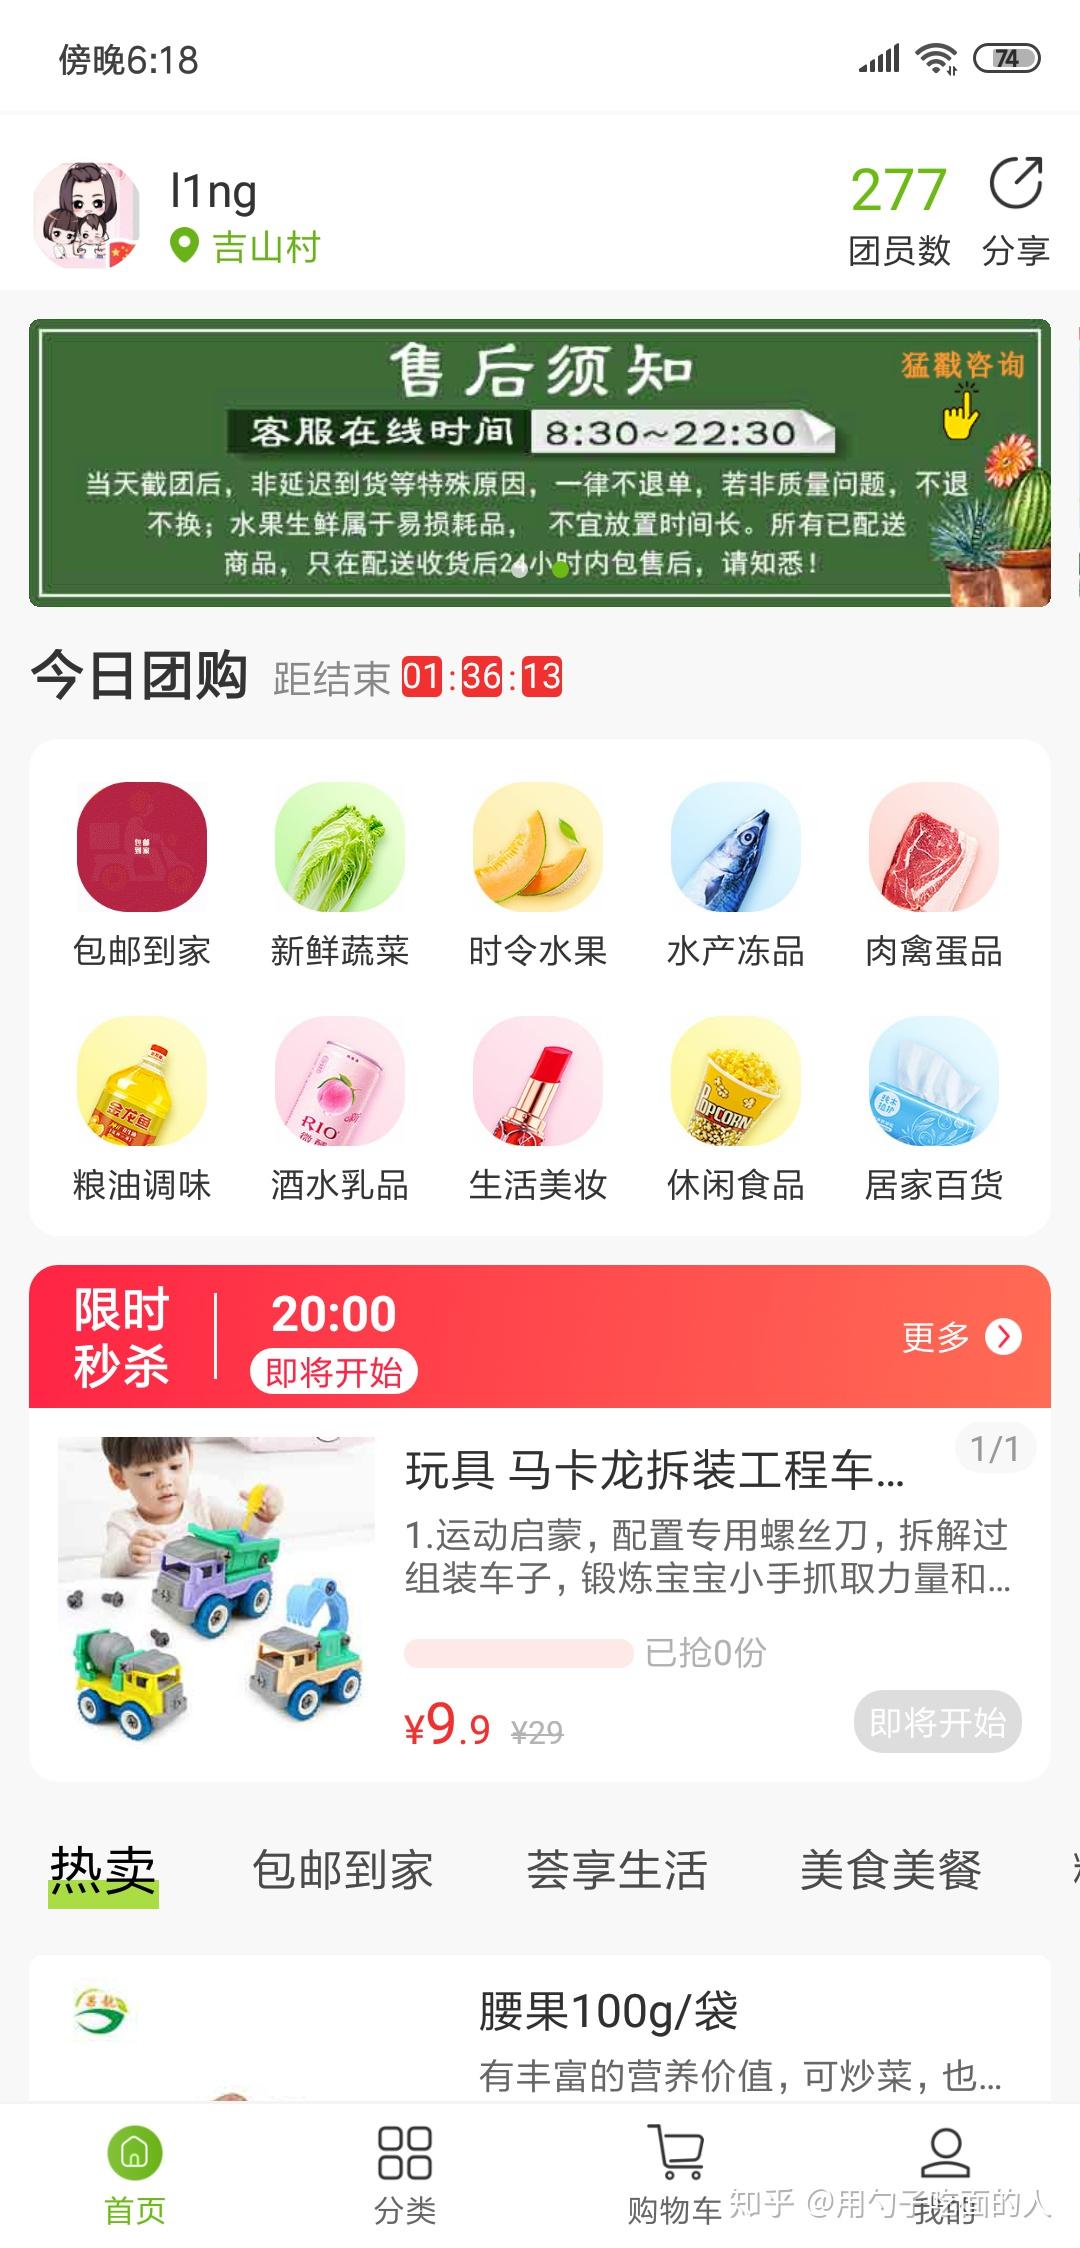 十荟团社区团购app开发?(介绍)